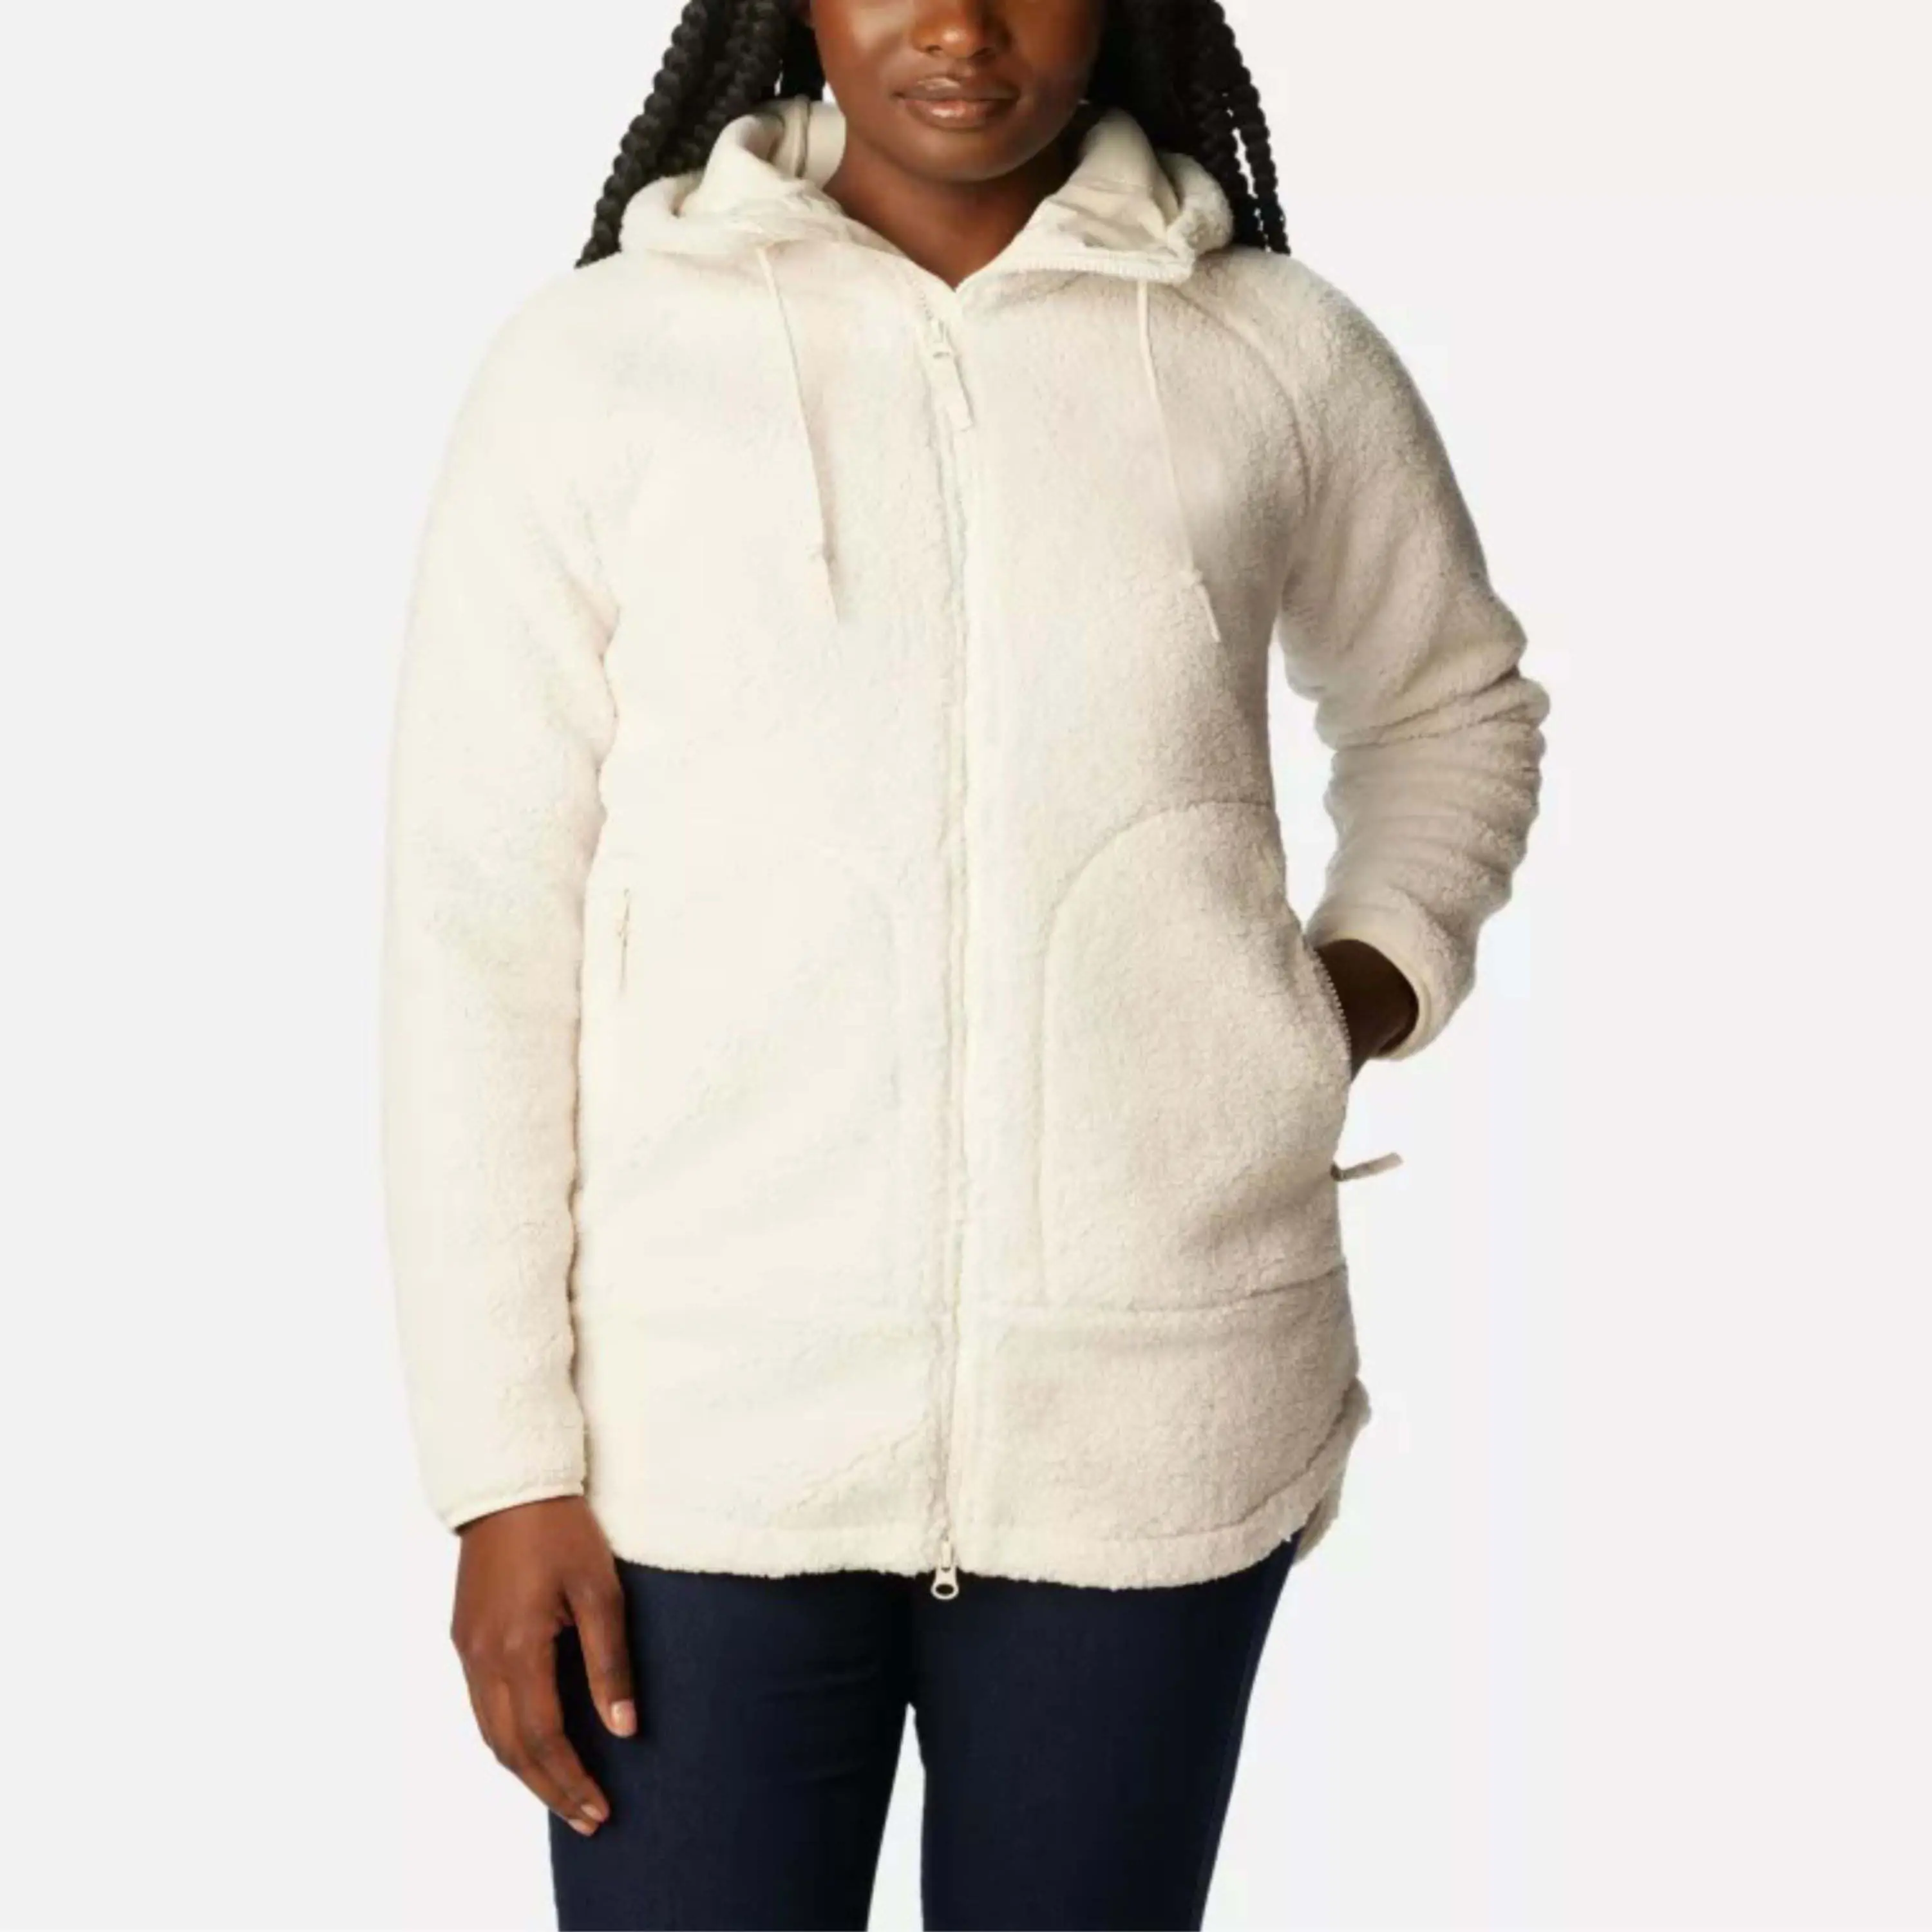 Roupa de rua para uso ao ar livre, jaqueta de lã Sherpa com zíper para mulheres, jaqueta de lã polar Sherpa estampada personalizada